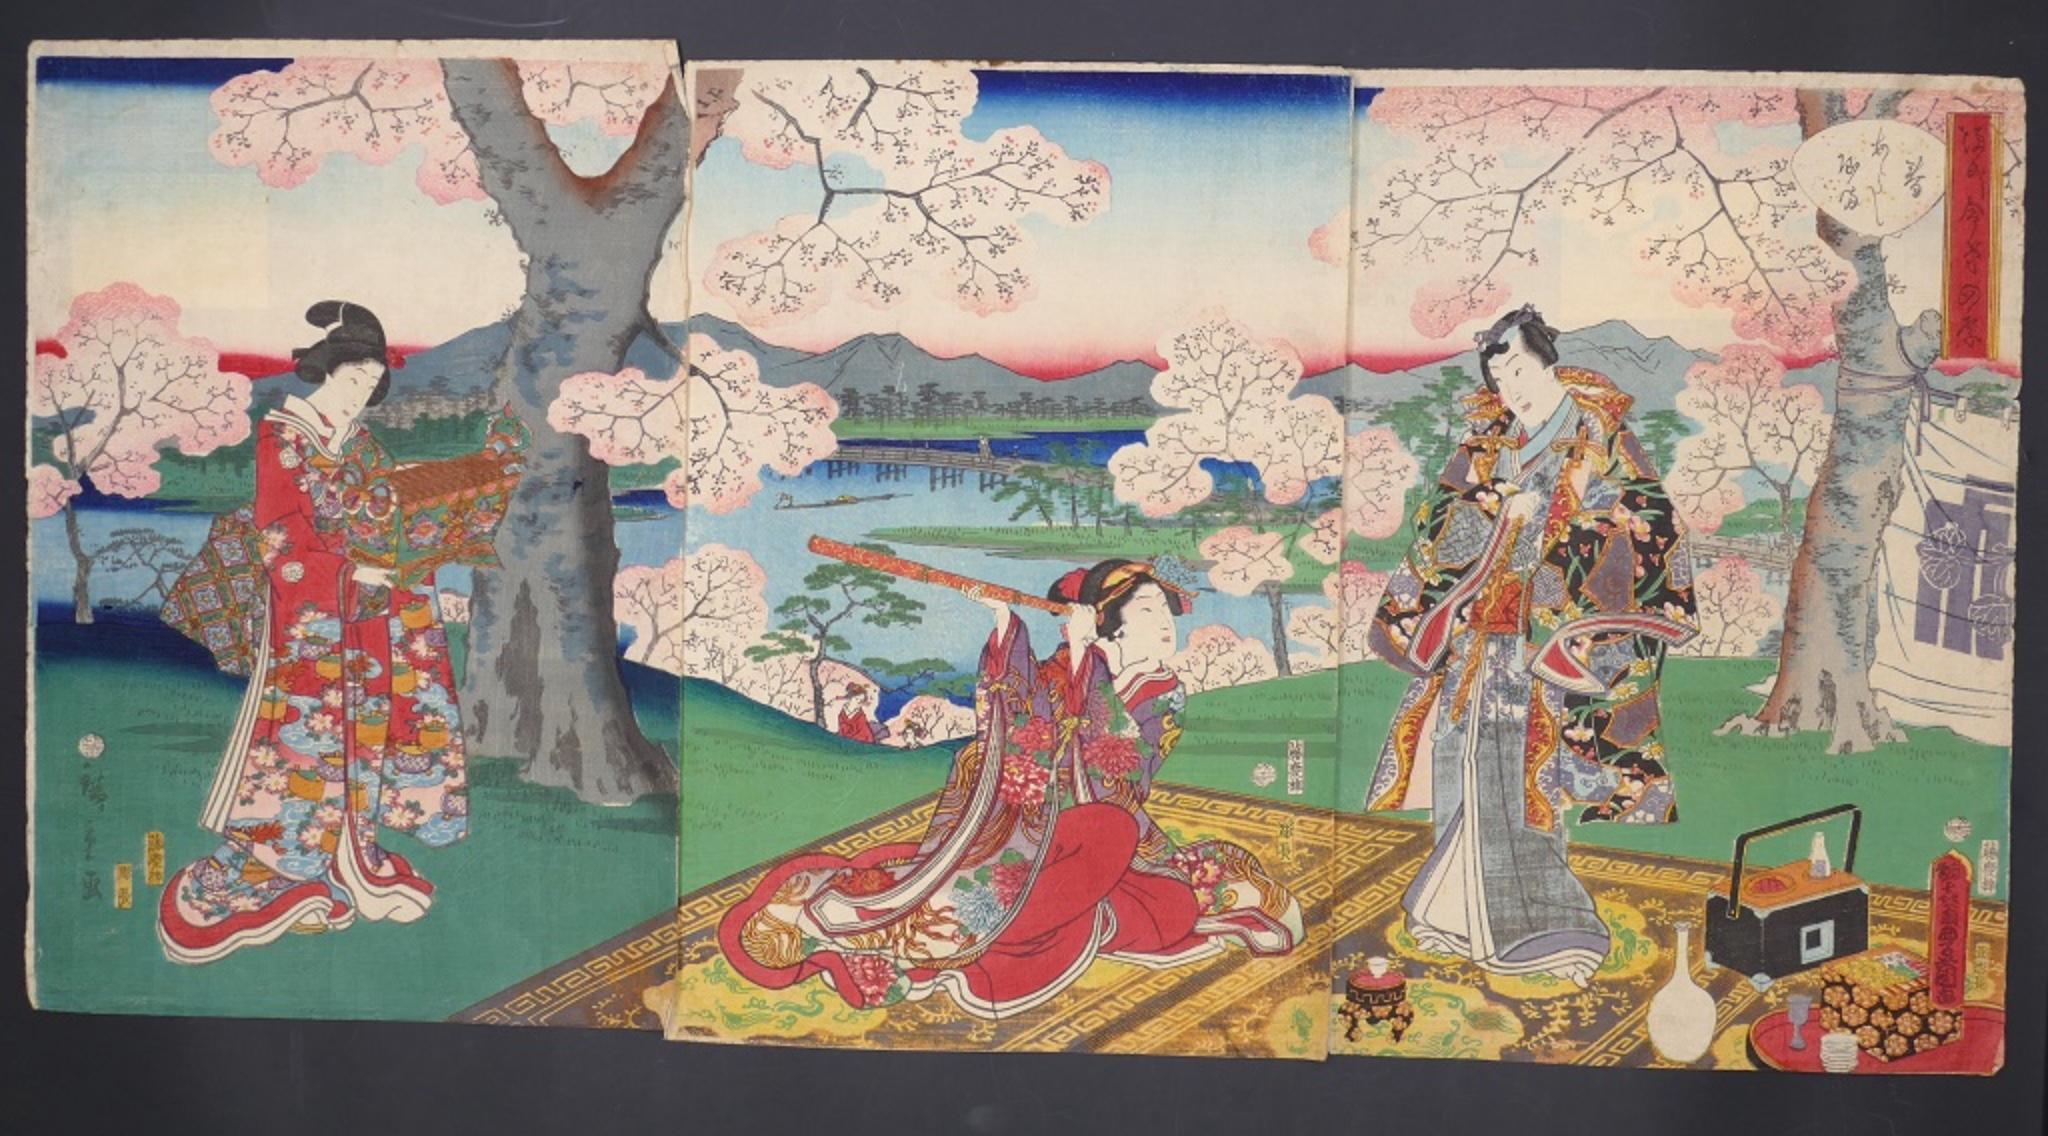 Ce tryptique japonais sous les cerisiers en fleurs  est une superbe gravure sur bois en couleur, composée de trois feuilles de papier, réalisée dans la première moitié du XIXe siècle par Utagawa Toyokuni II (1777-1835).

Un ukiyo-e à couper le